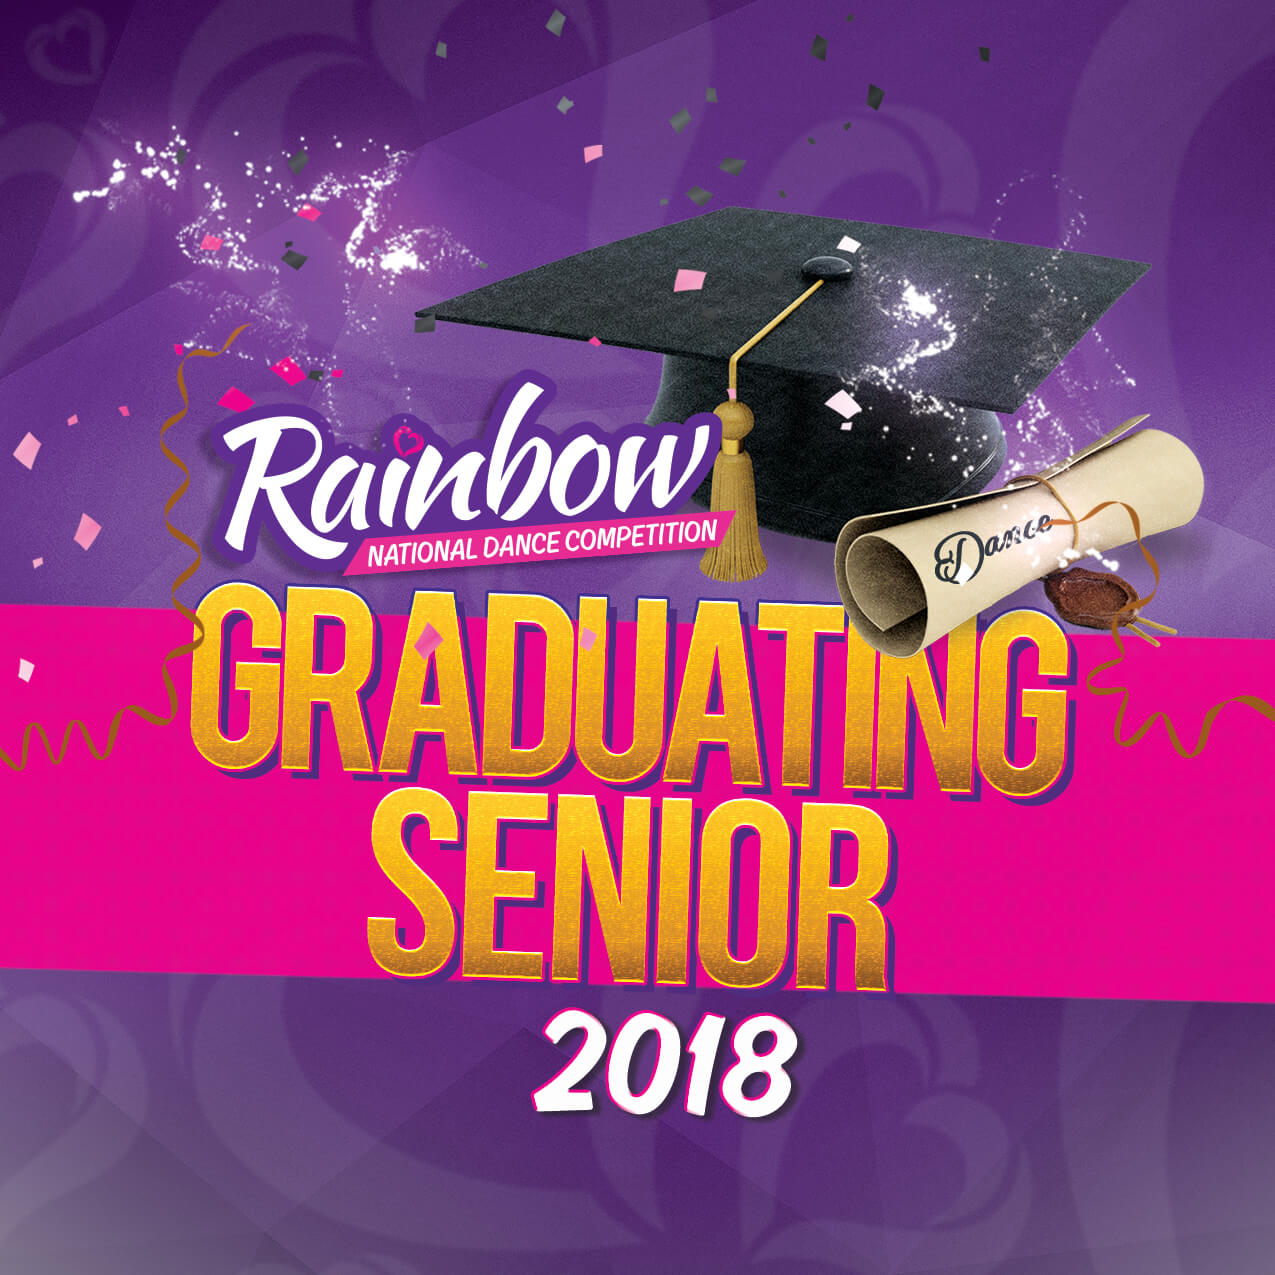 Rainbow Graduating Senior Scholarship